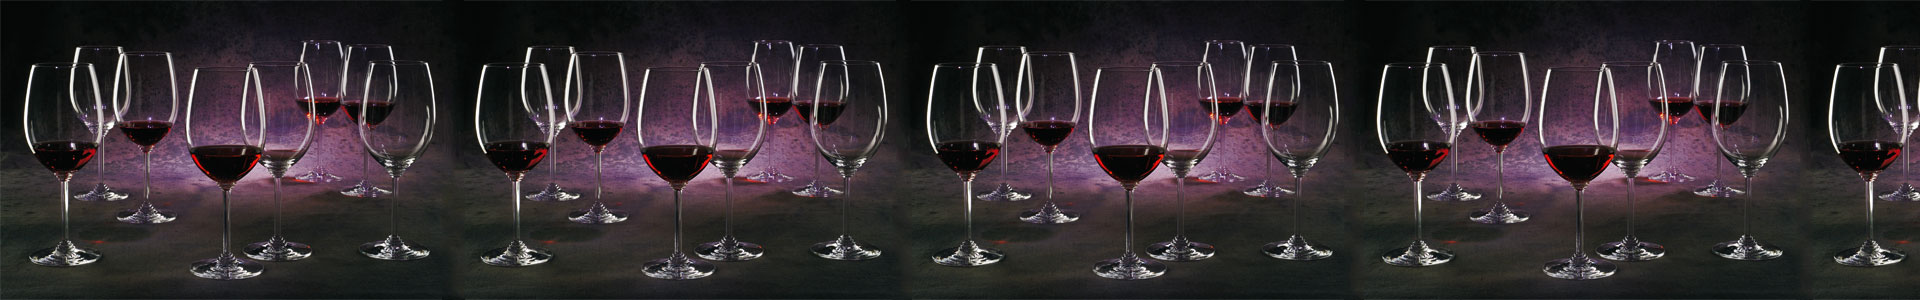 Zahlreiche Weingläser aus der Serie Riedel Wine sind mit Rotwein gefüllt und stehen in violettem Licht.